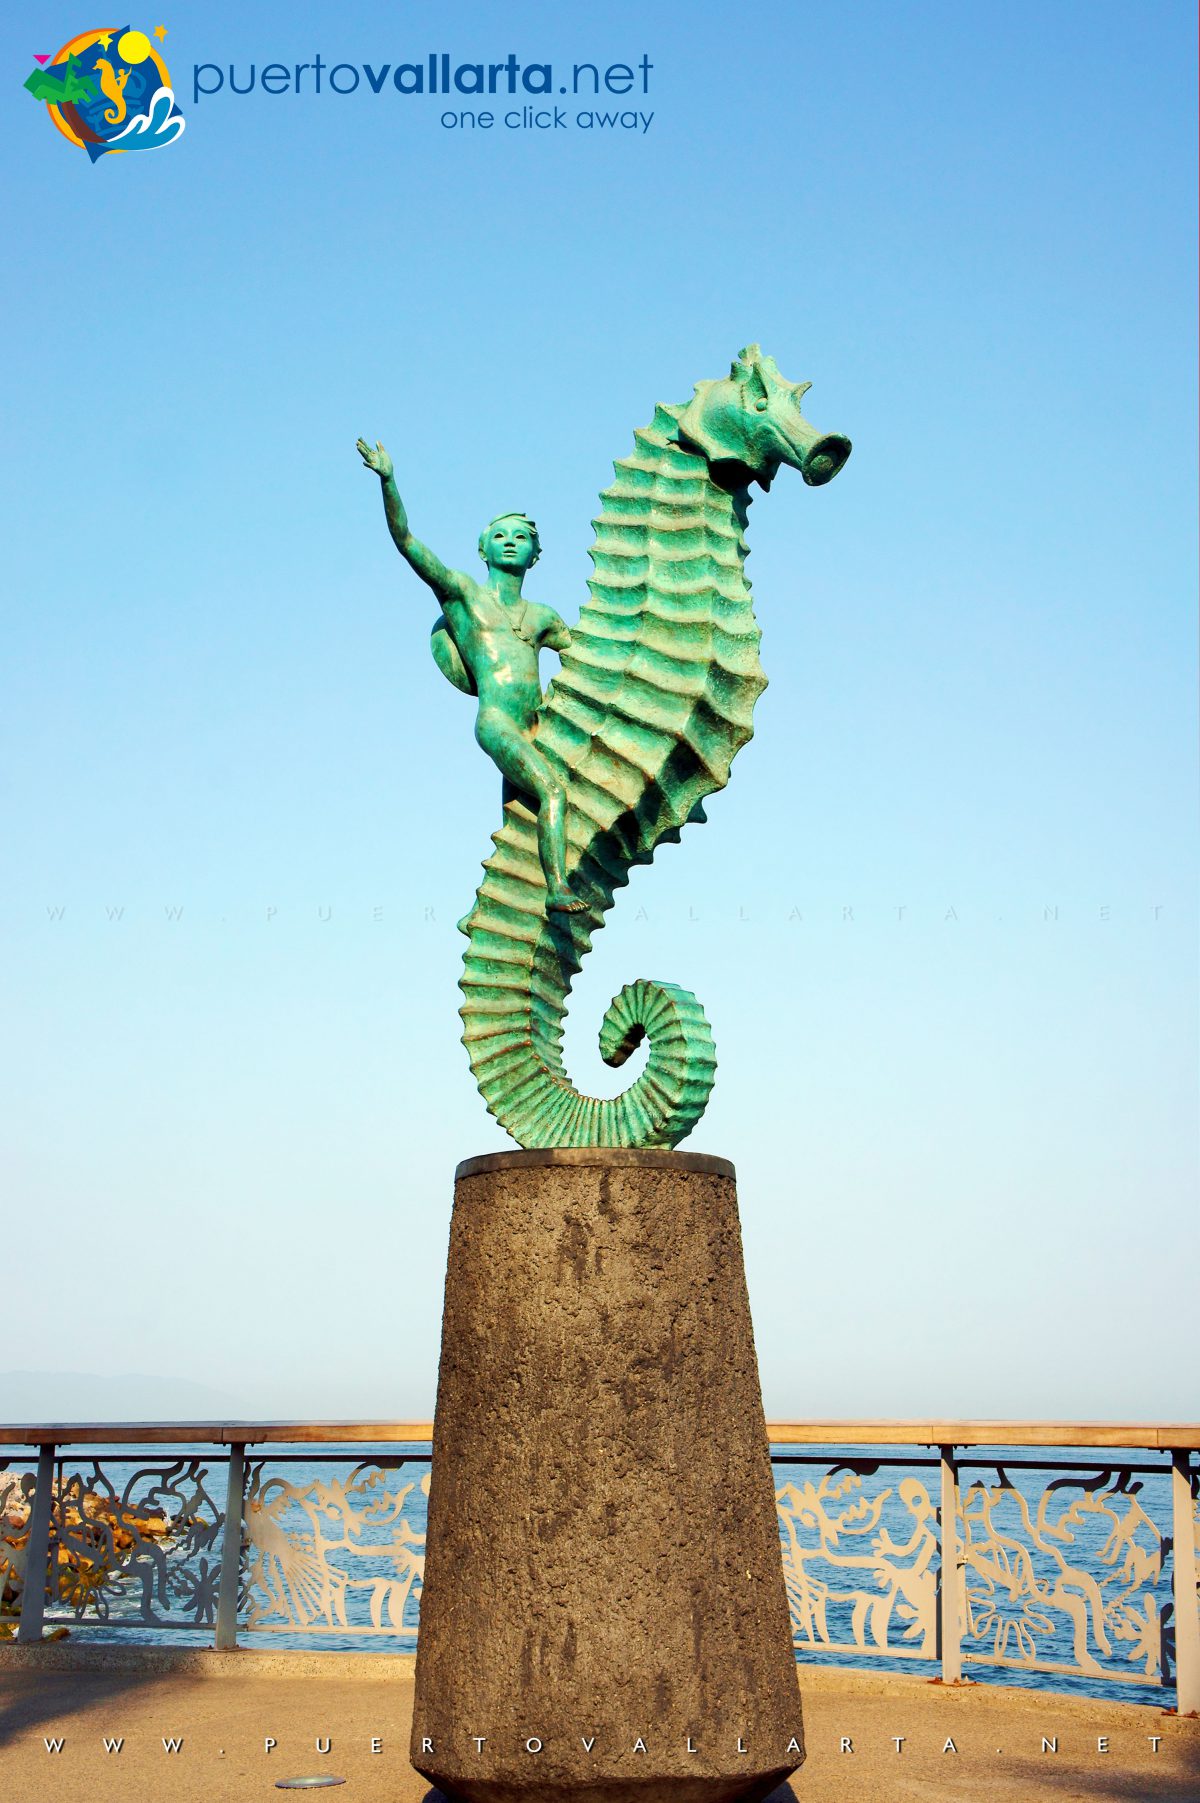 Seahorse Statue Puerto Vallarta (The Boy on the Seahorse) Rafael Zamarripa